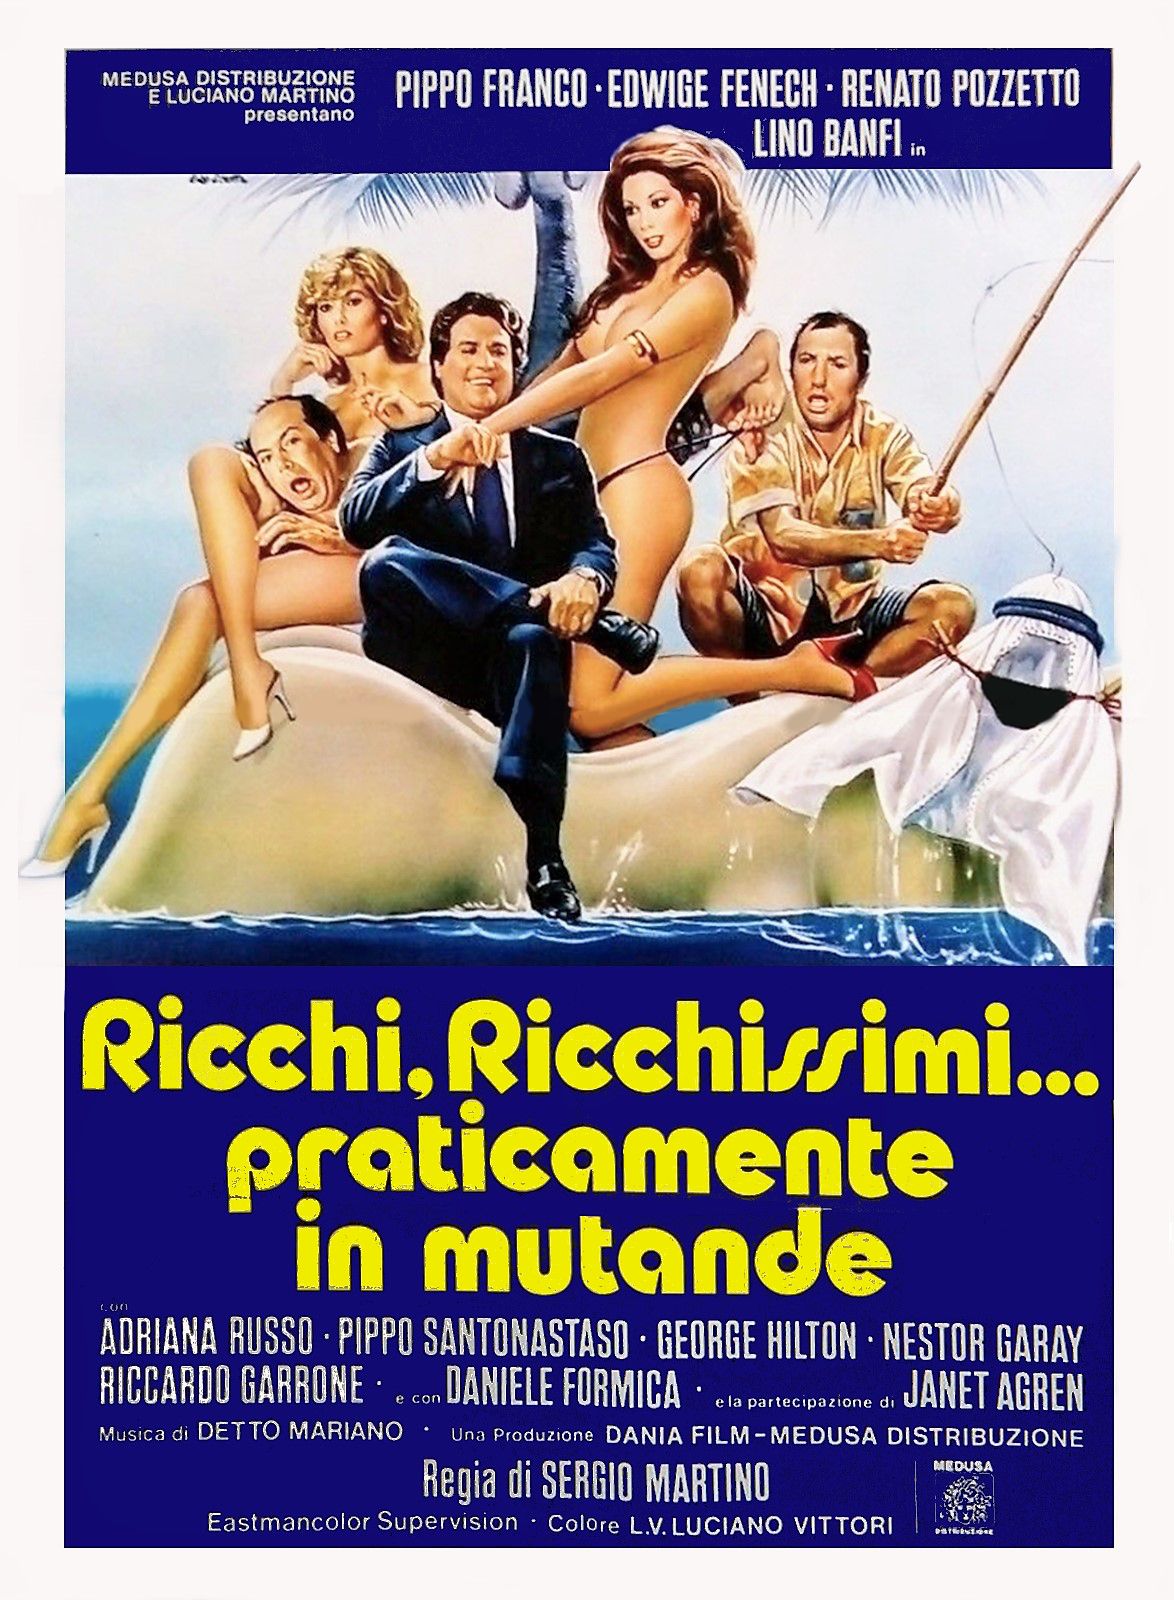 Ricchi, ricchissimi... praticamente in mutande (1982) Screenshot 3